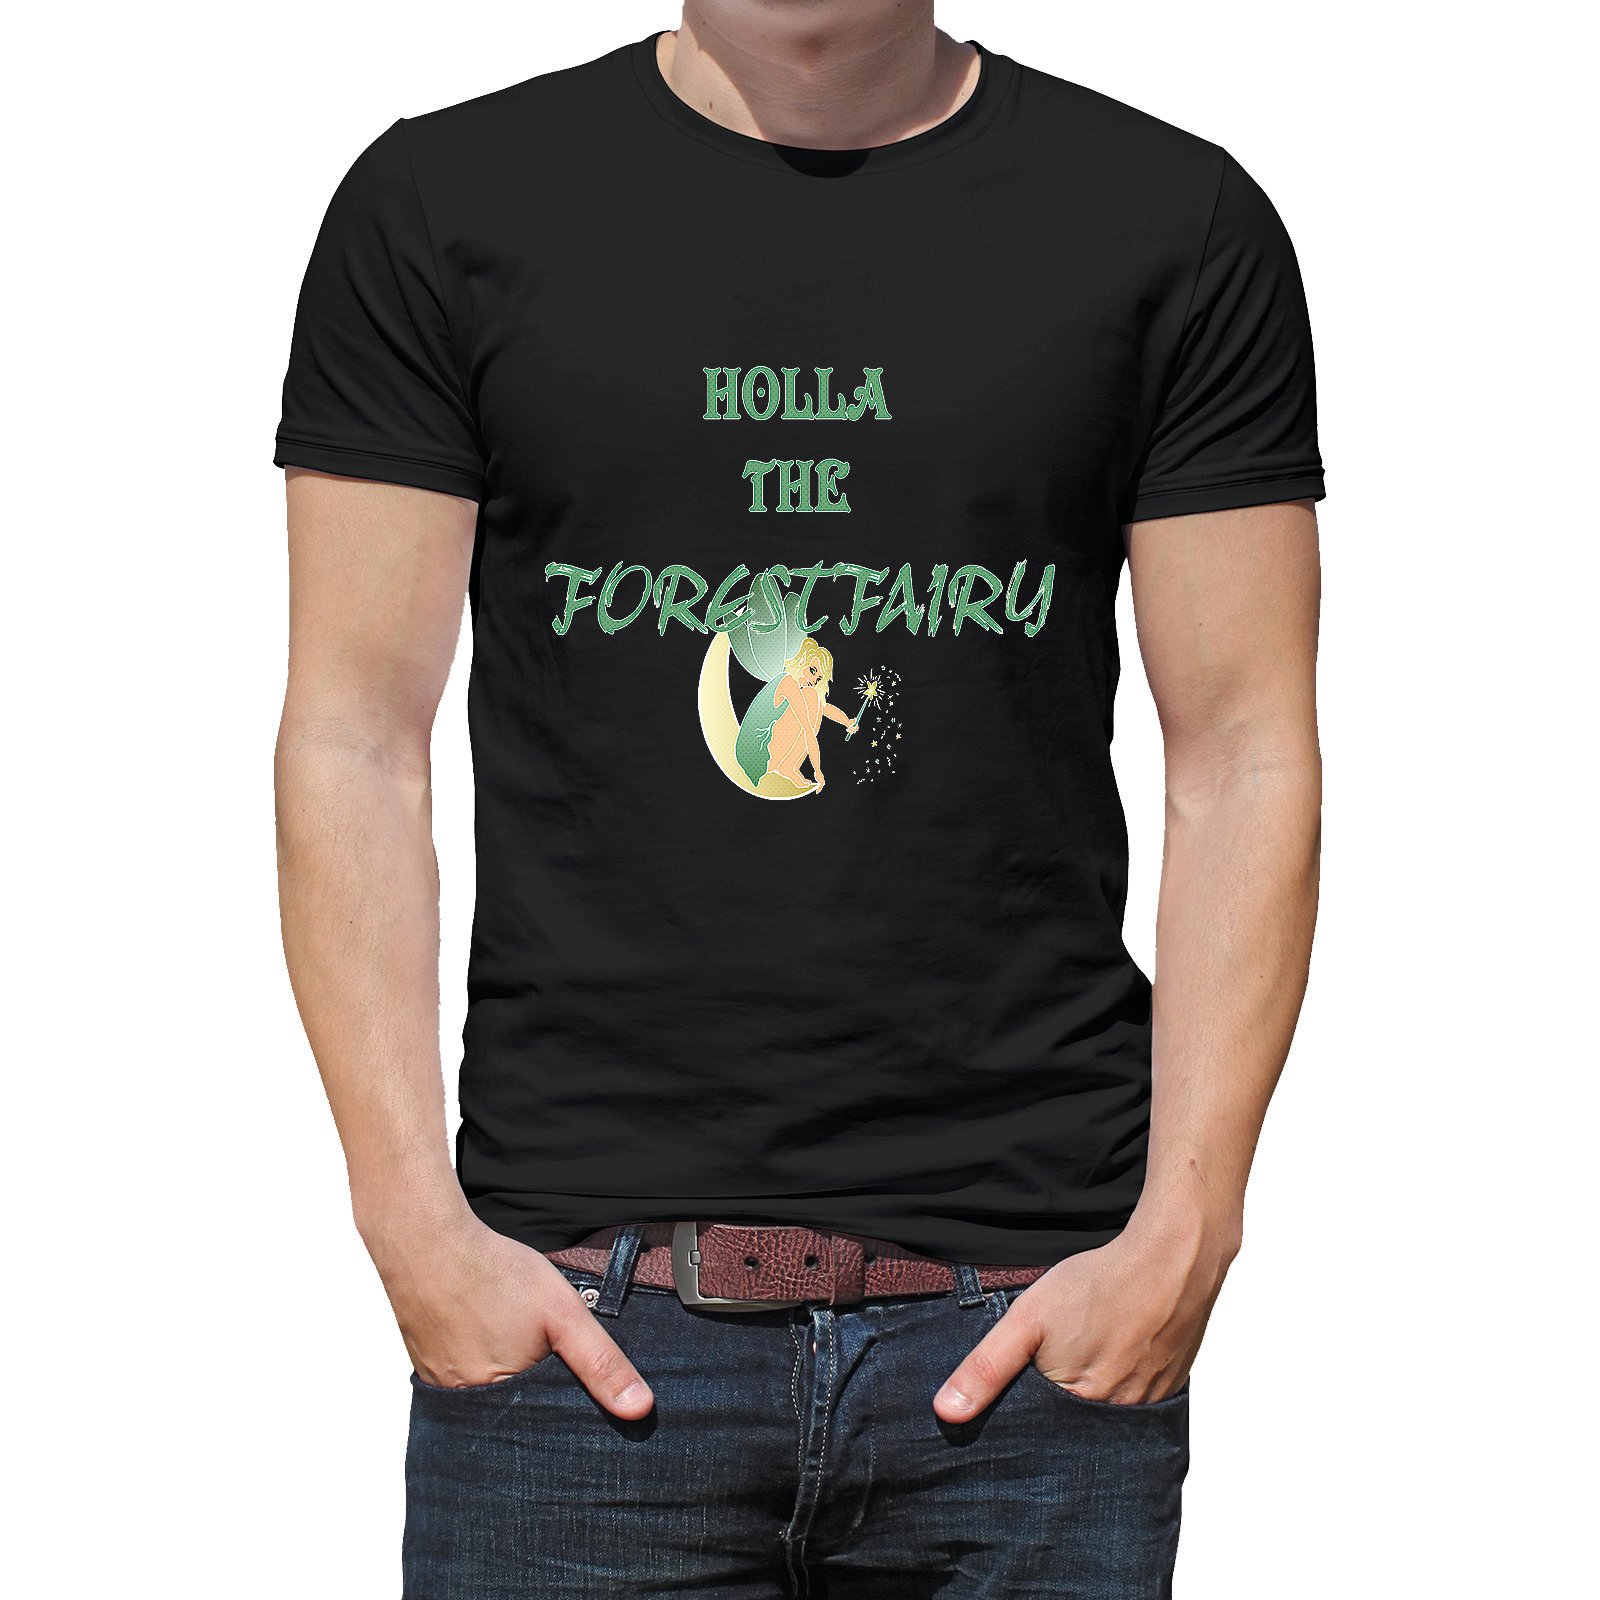 Herren T Shirt Modell Forestfairy  - Onlineshop LieblingsMensch